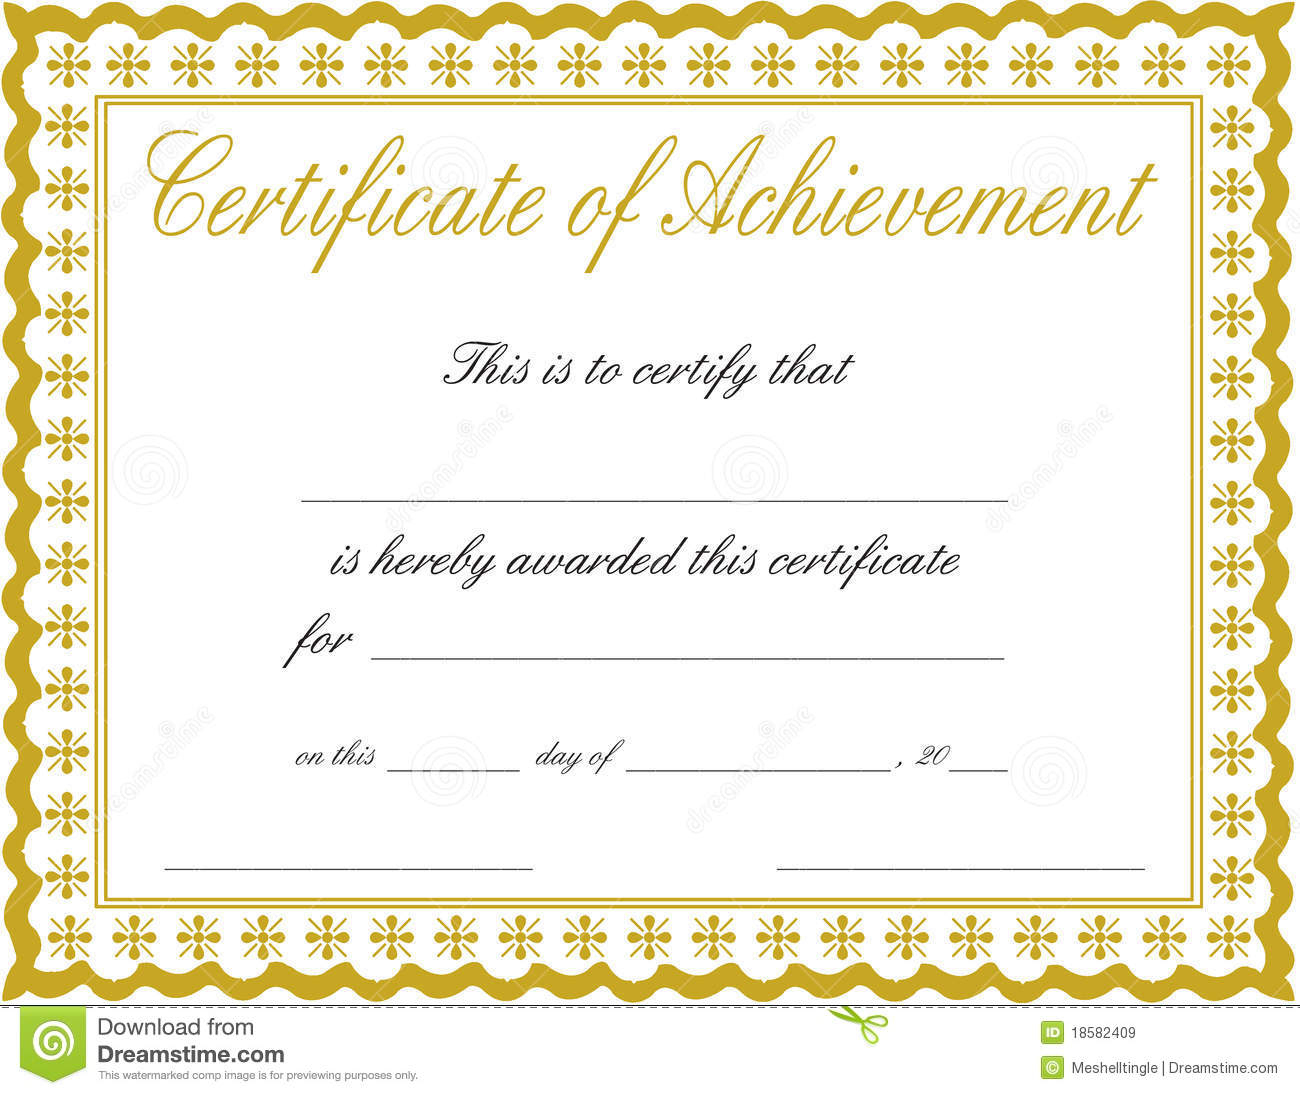 Docx-Achievement-Certificates-Templates-Free-Certificate-Of - Free Printable Certificates And Awards